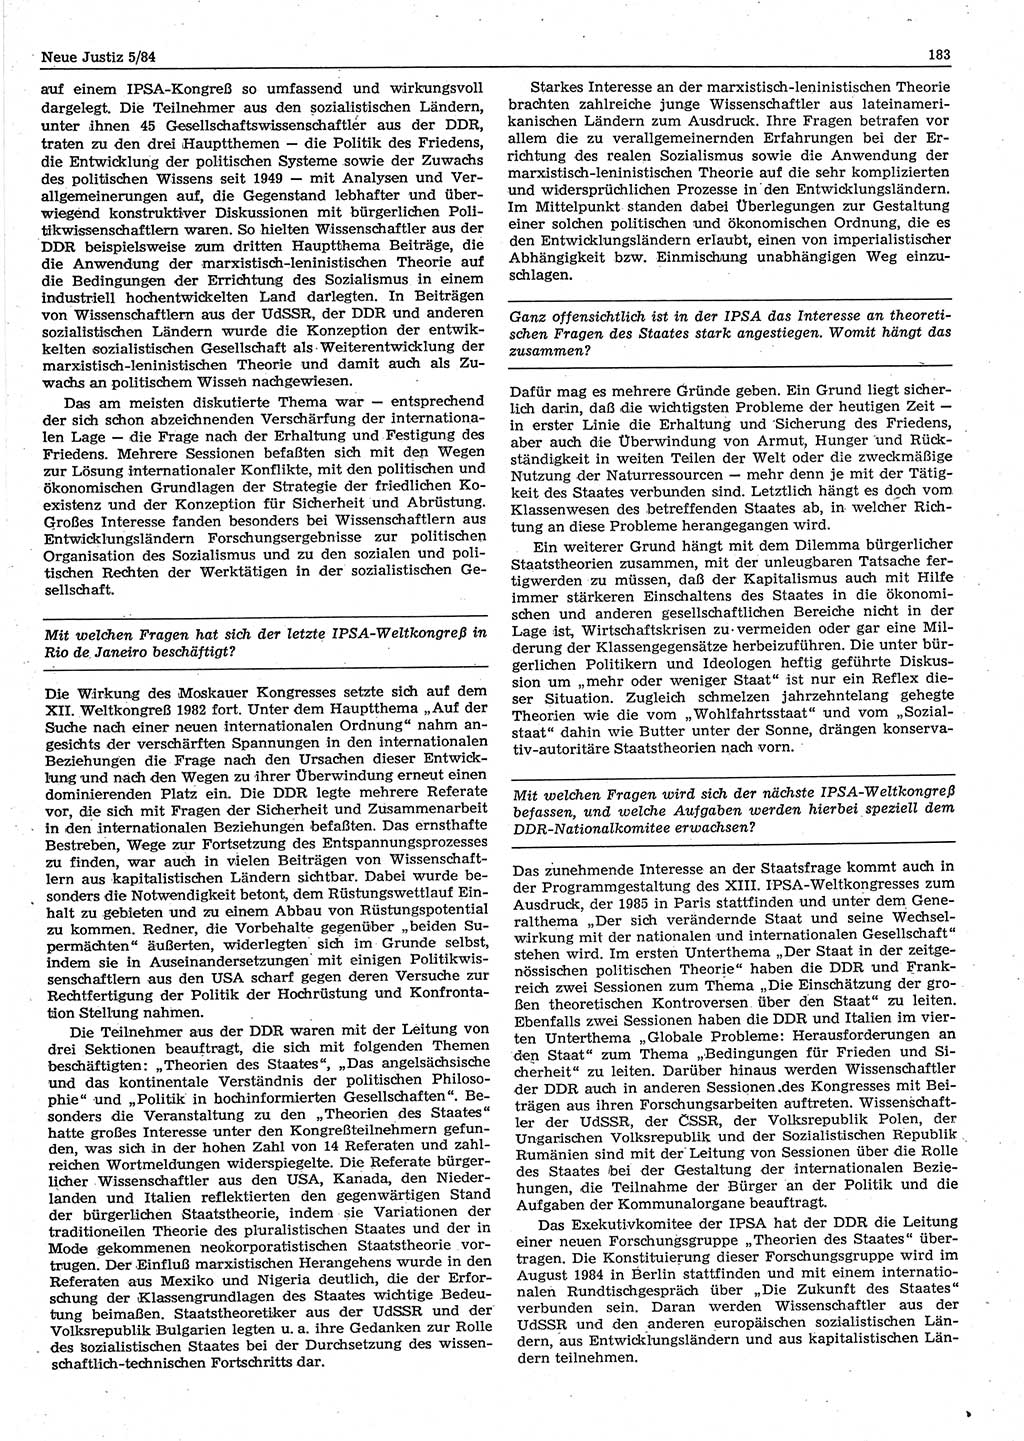 Neue Justiz (NJ), Zeitschrift für sozialistisches Recht und Gesetzlichkeit [Deutsche Demokratische Republik (DDR)], 38. Jahrgang 1984, Seite 183 (NJ DDR 1984, S. 183)